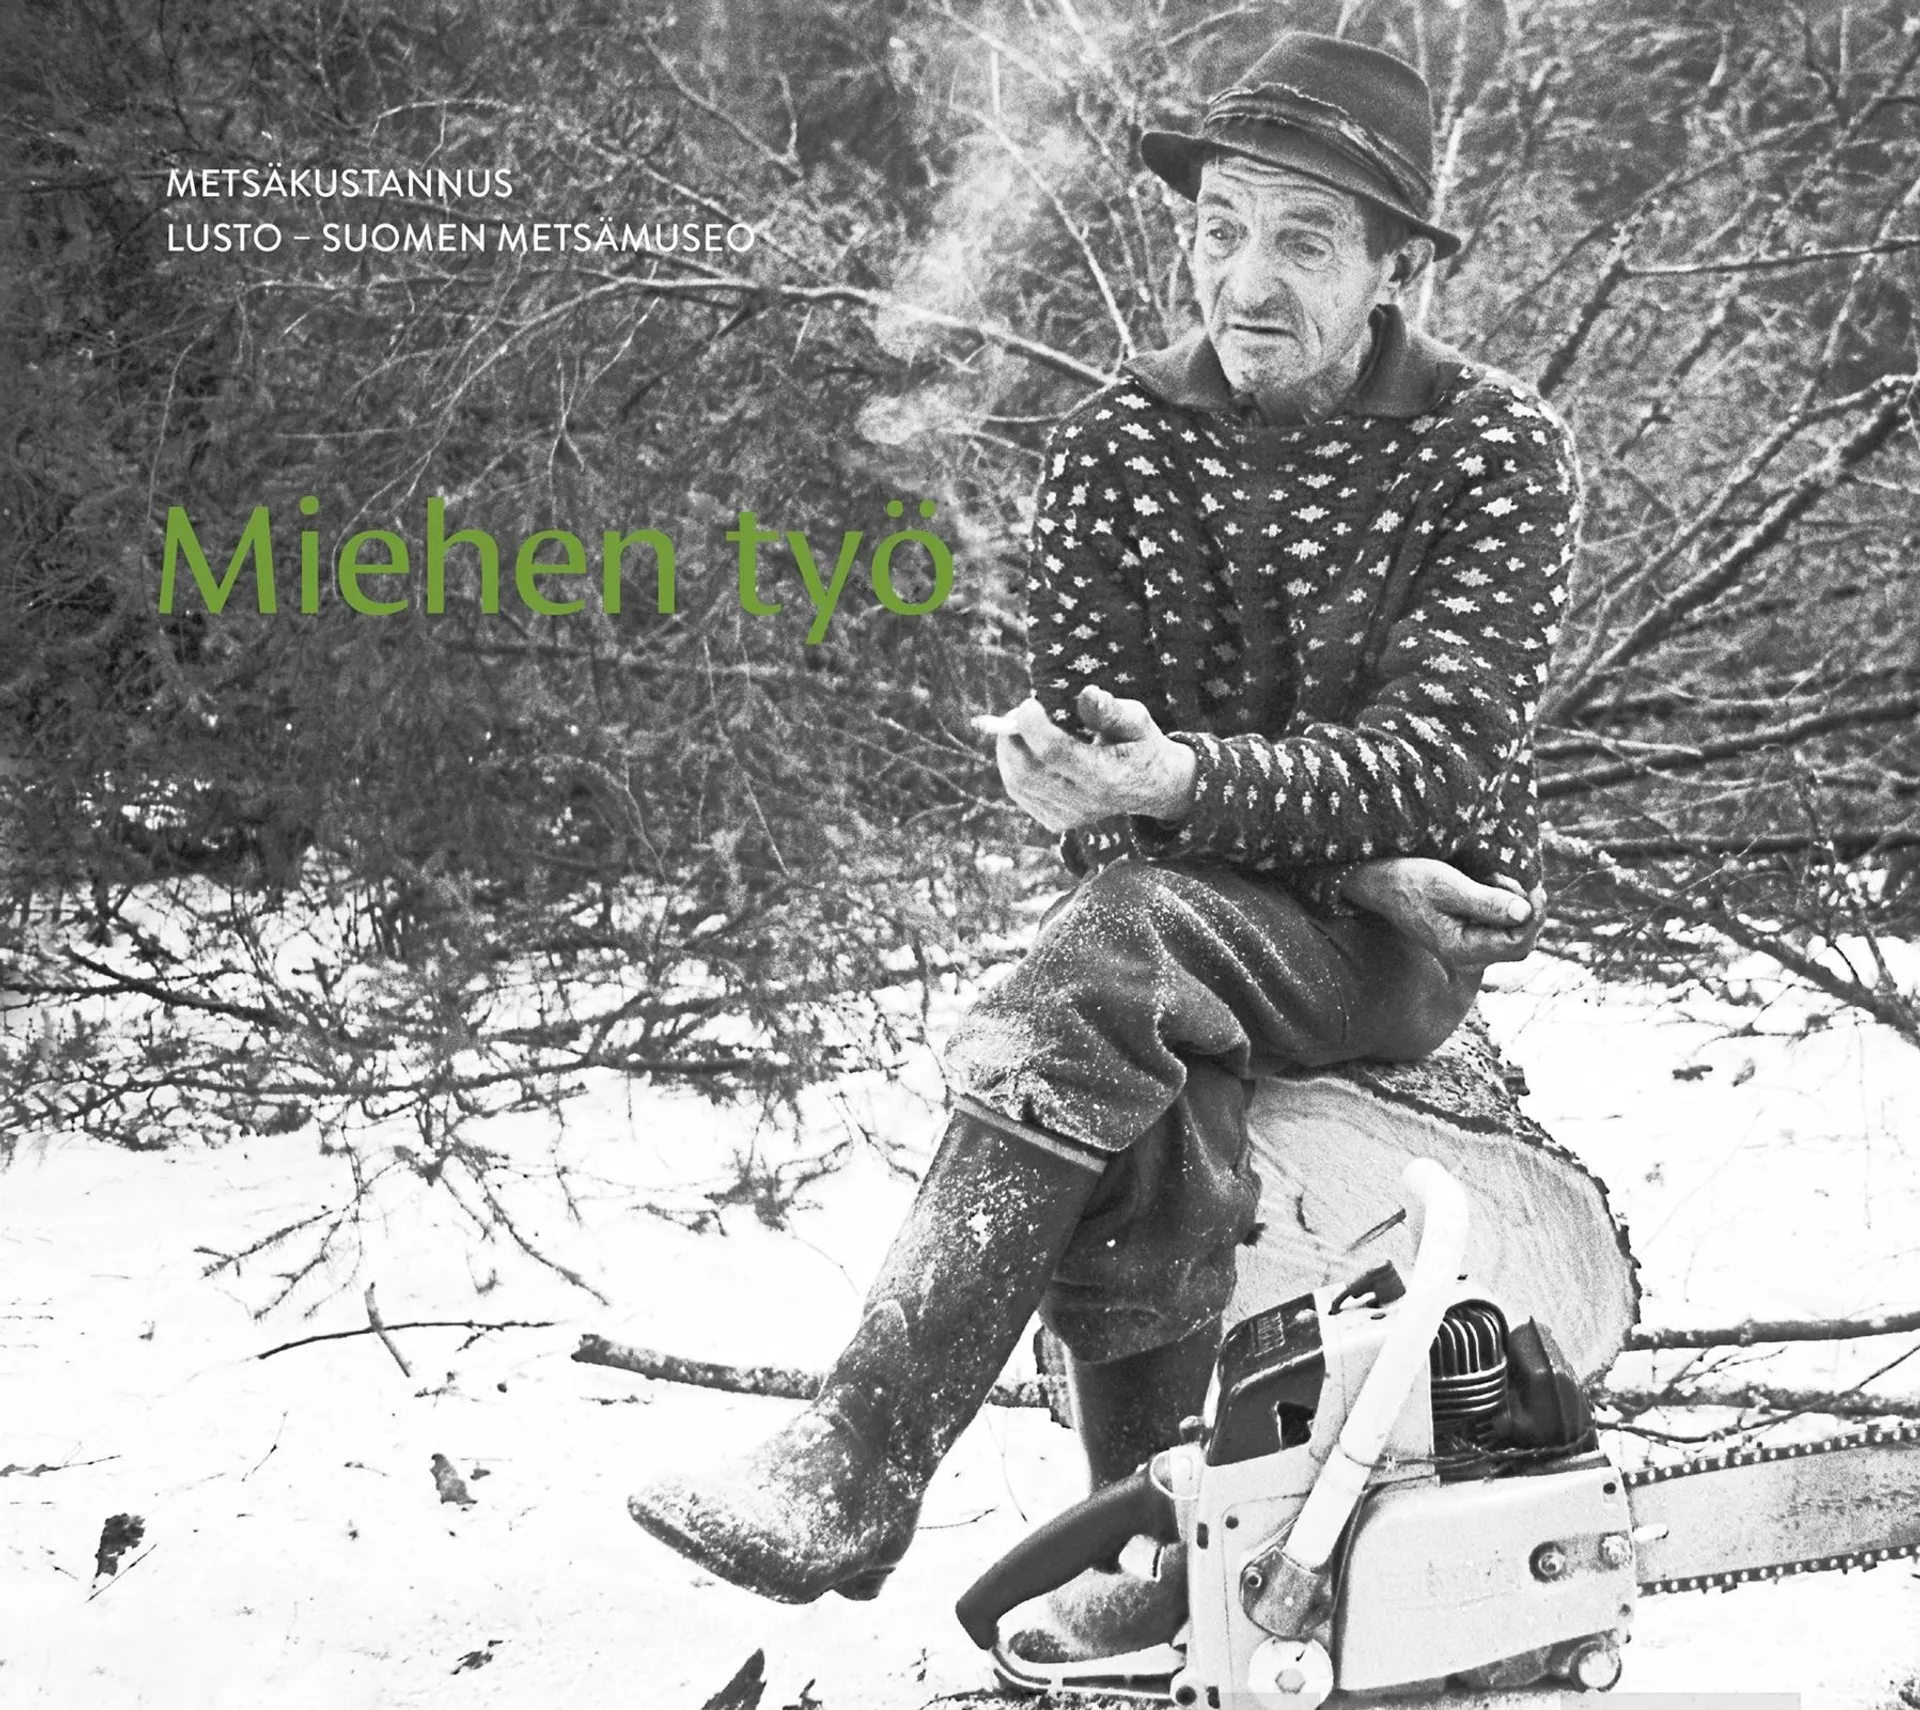 Miehen työ - A man's job - Suomi taitekohdassa 1970 - Finland at a turning point in 1970